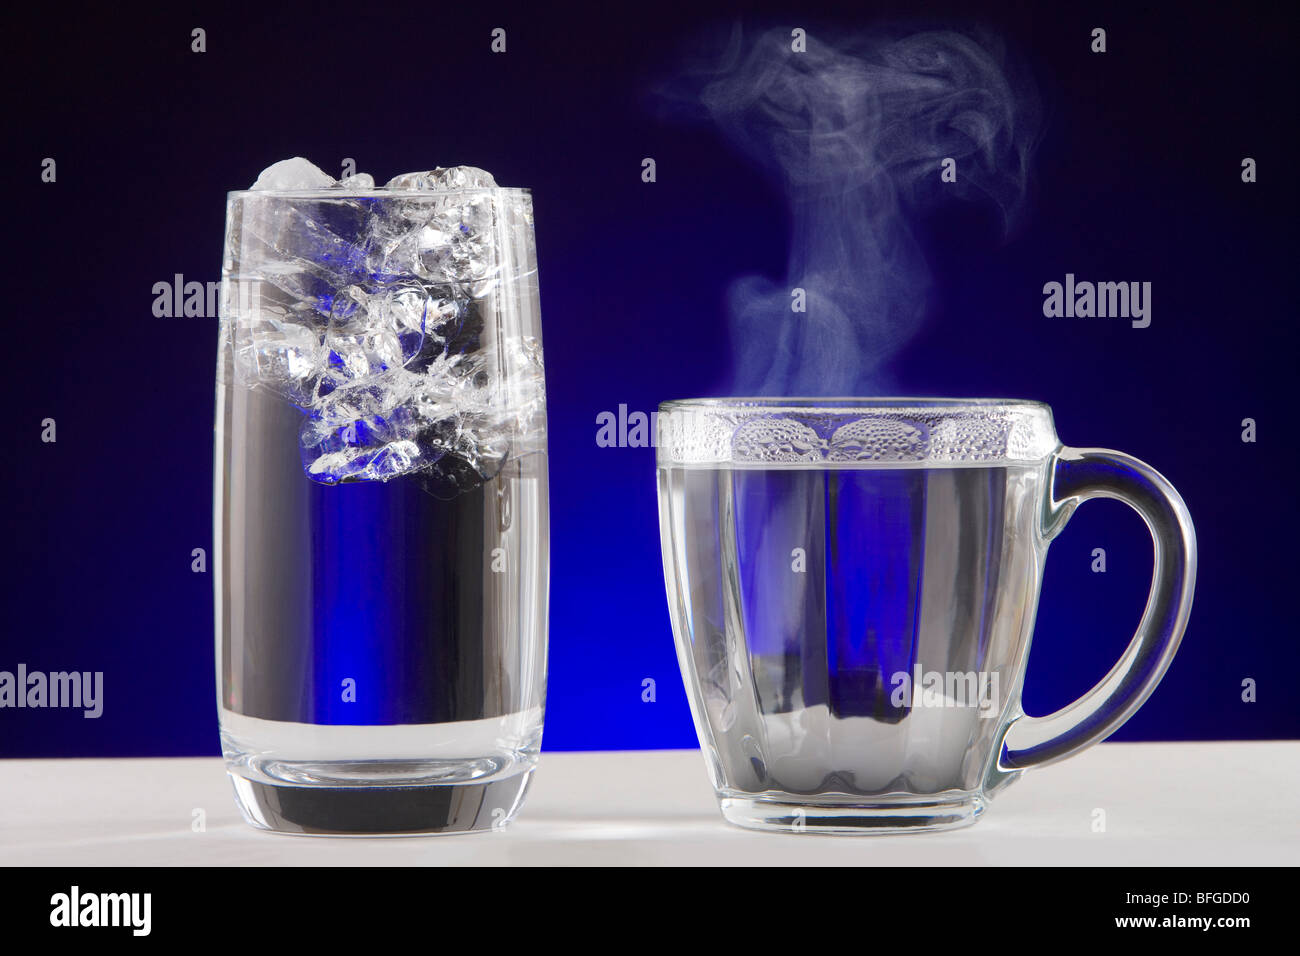 L'eau de vapeur de la glace. Un verre d'eau glacée et une tasse de thé de l'eau vapeur chaude. Banque D'Images